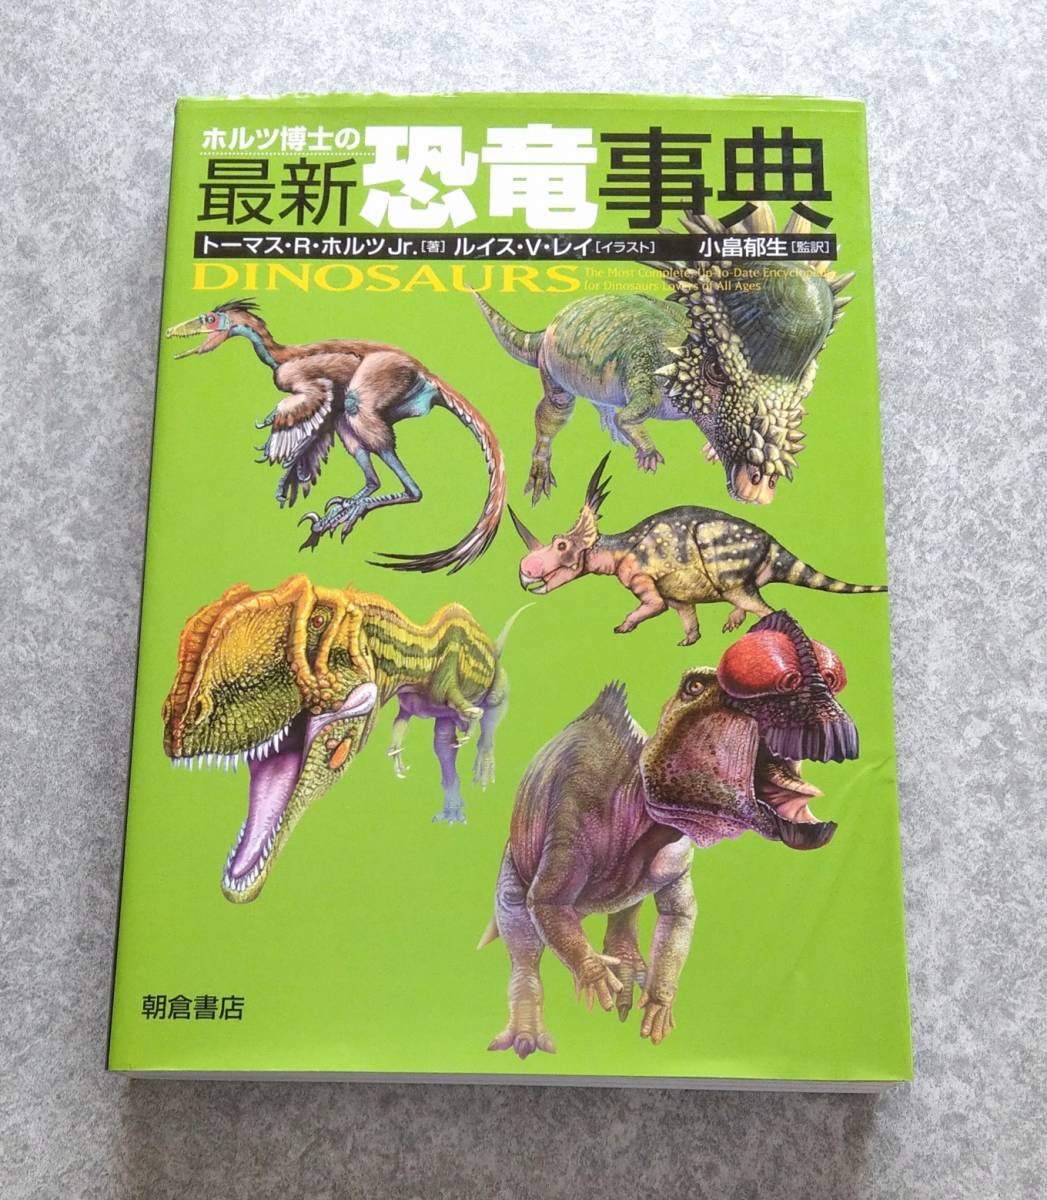 ホルツ博士の最新恐竜事典 トーマス R.ホルツ Jr. 恐竜 百科事典 資料